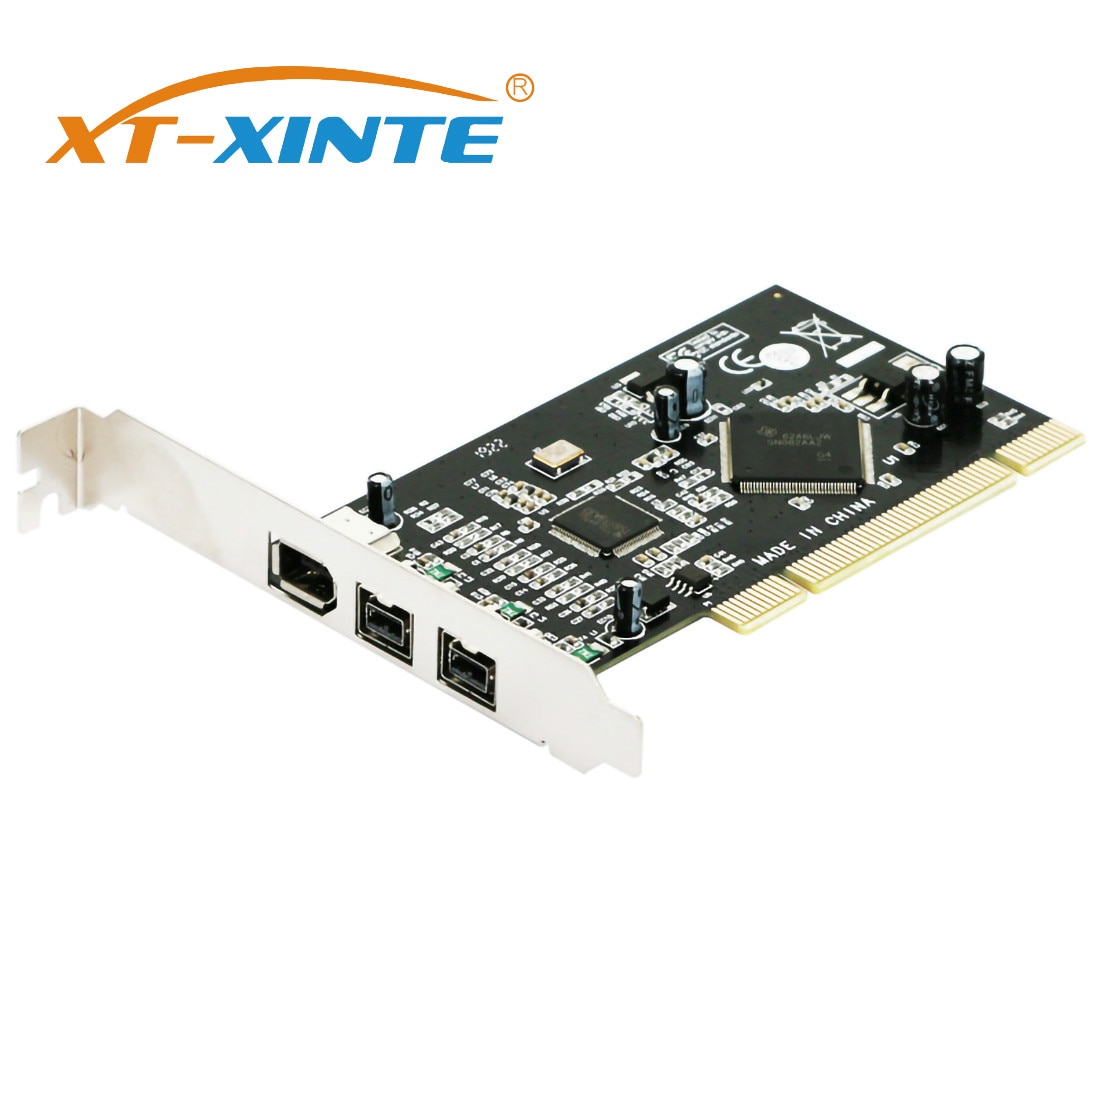 XT-XINTE On Kaarten Pci 2x Ieee 1394B 9 Pin & 1x 1394A 6 Pin 1394 Extension Adapter Pci Controller kaart Voor Firewire Destop Pc